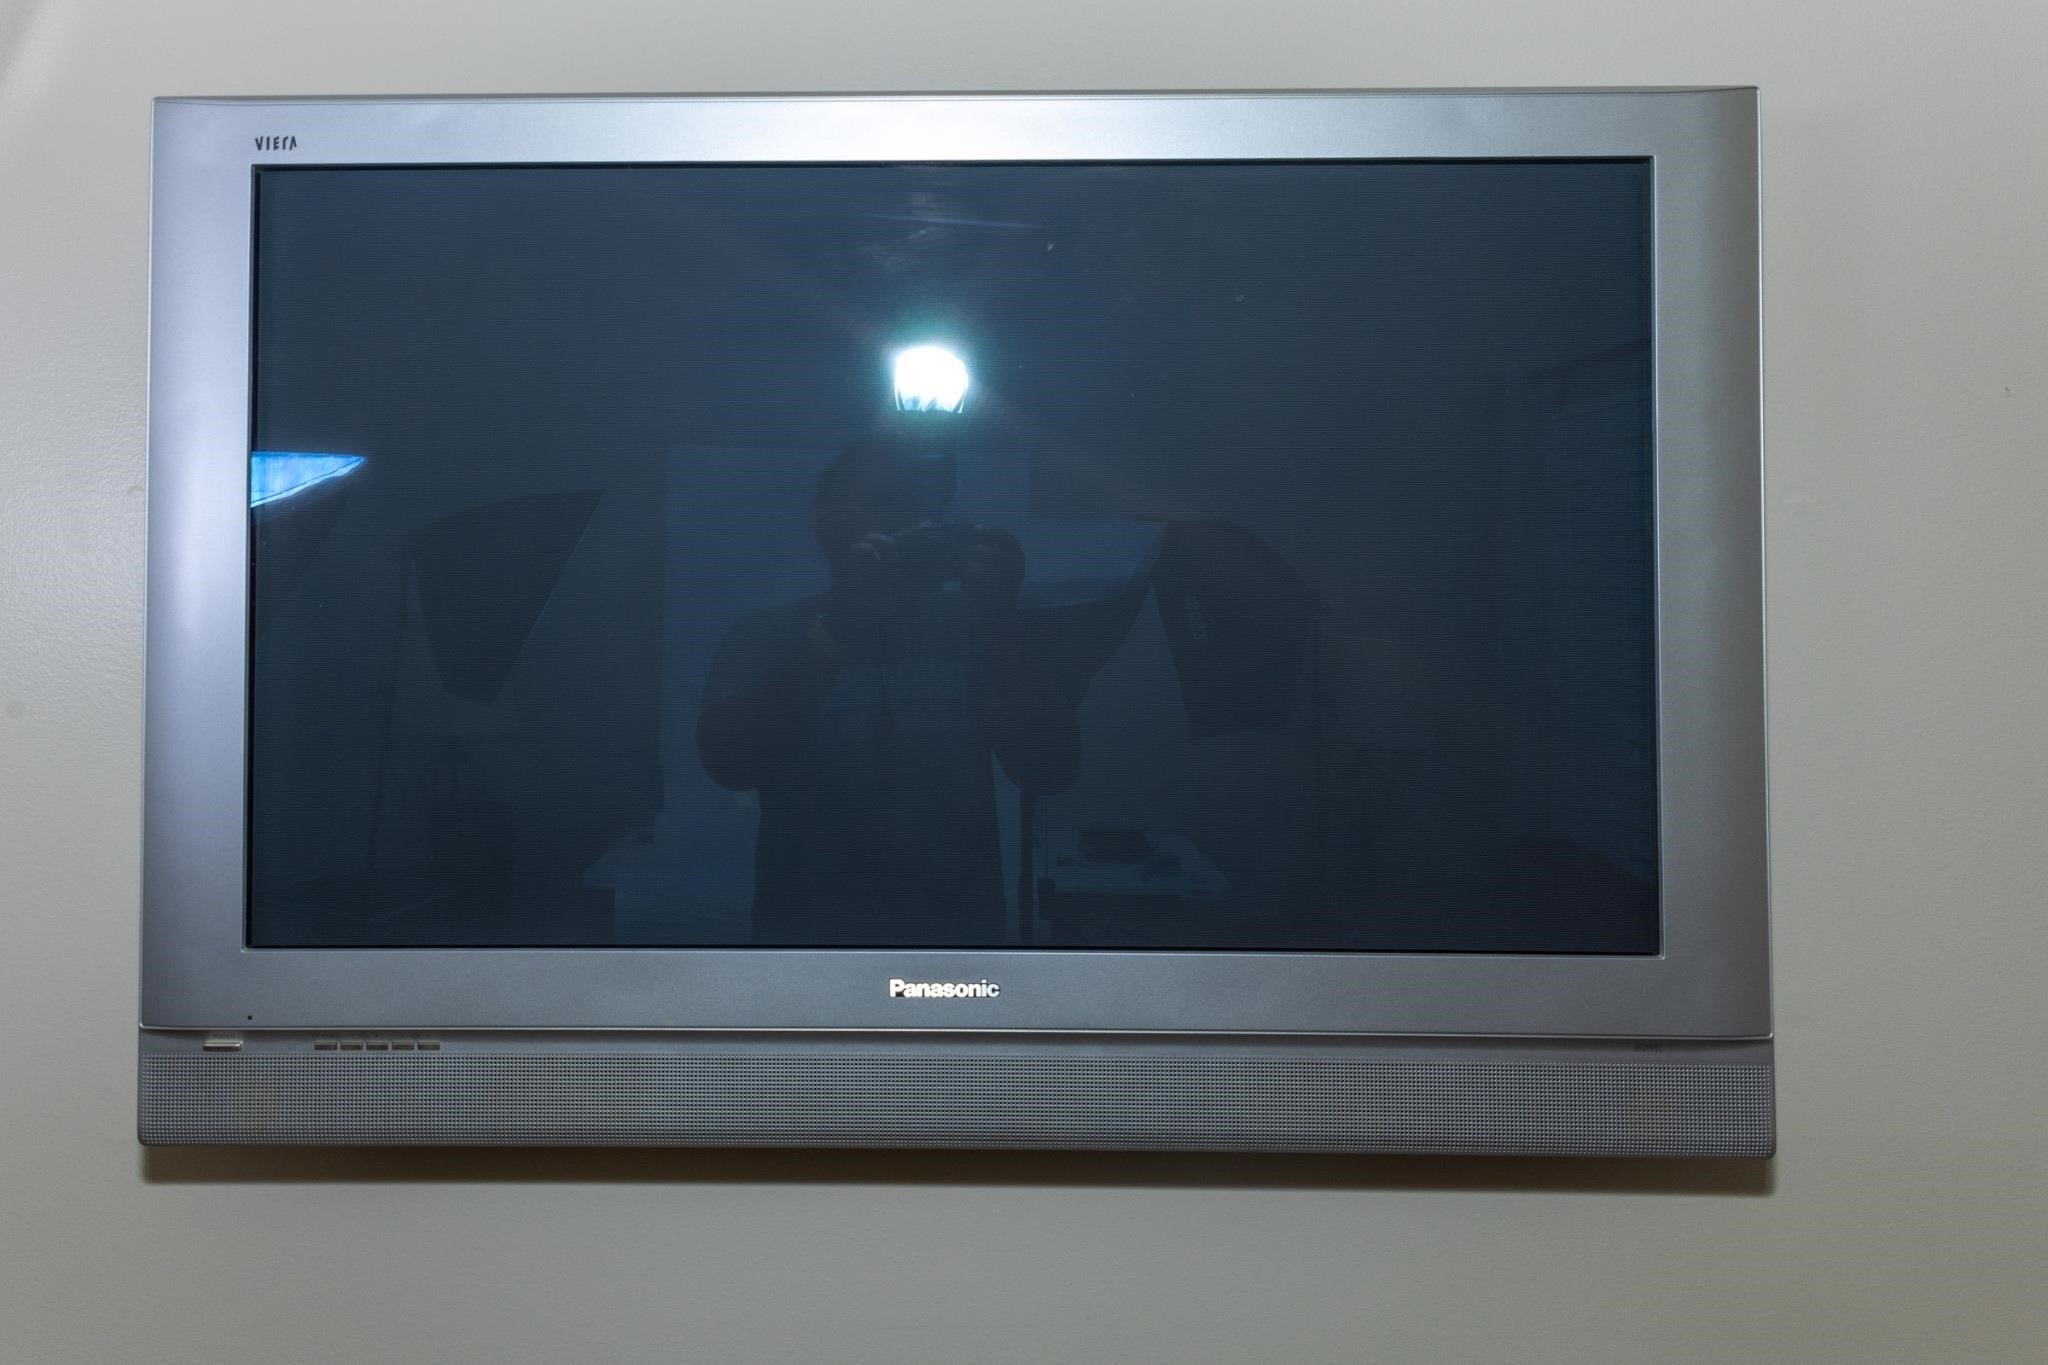 Panasonic Wall Mounted Flat Screen TV